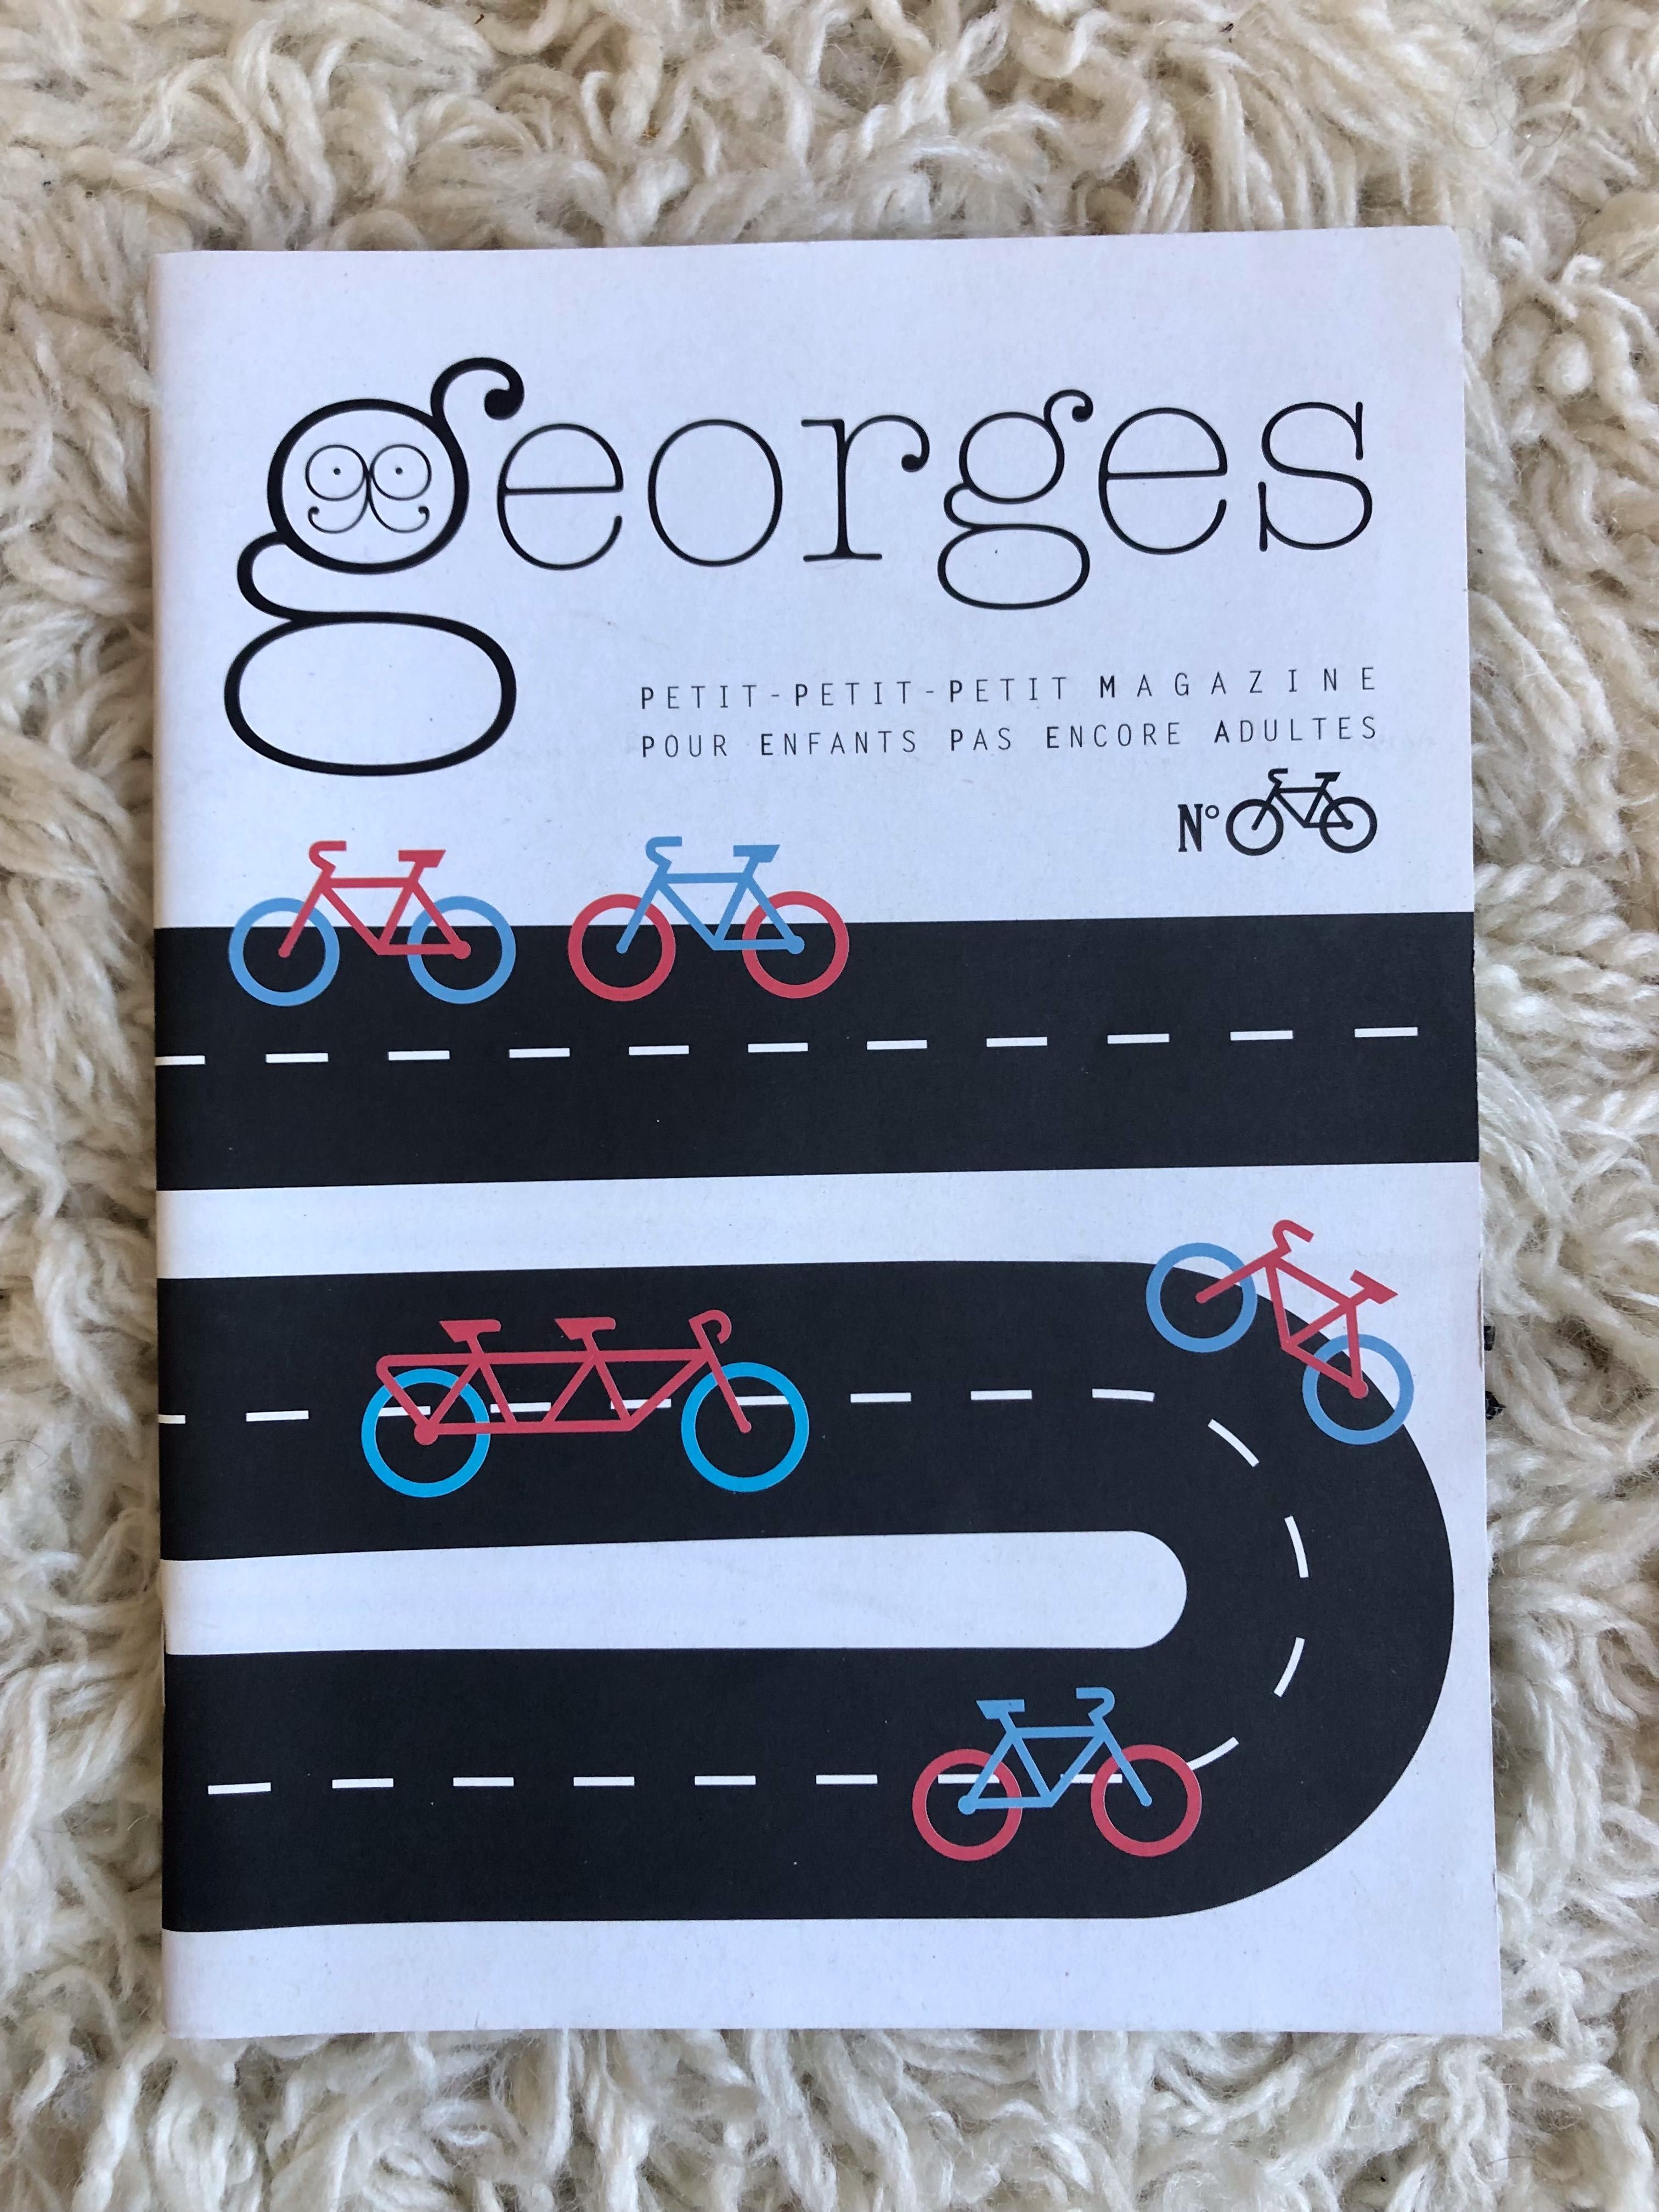 georges PETIT magazine